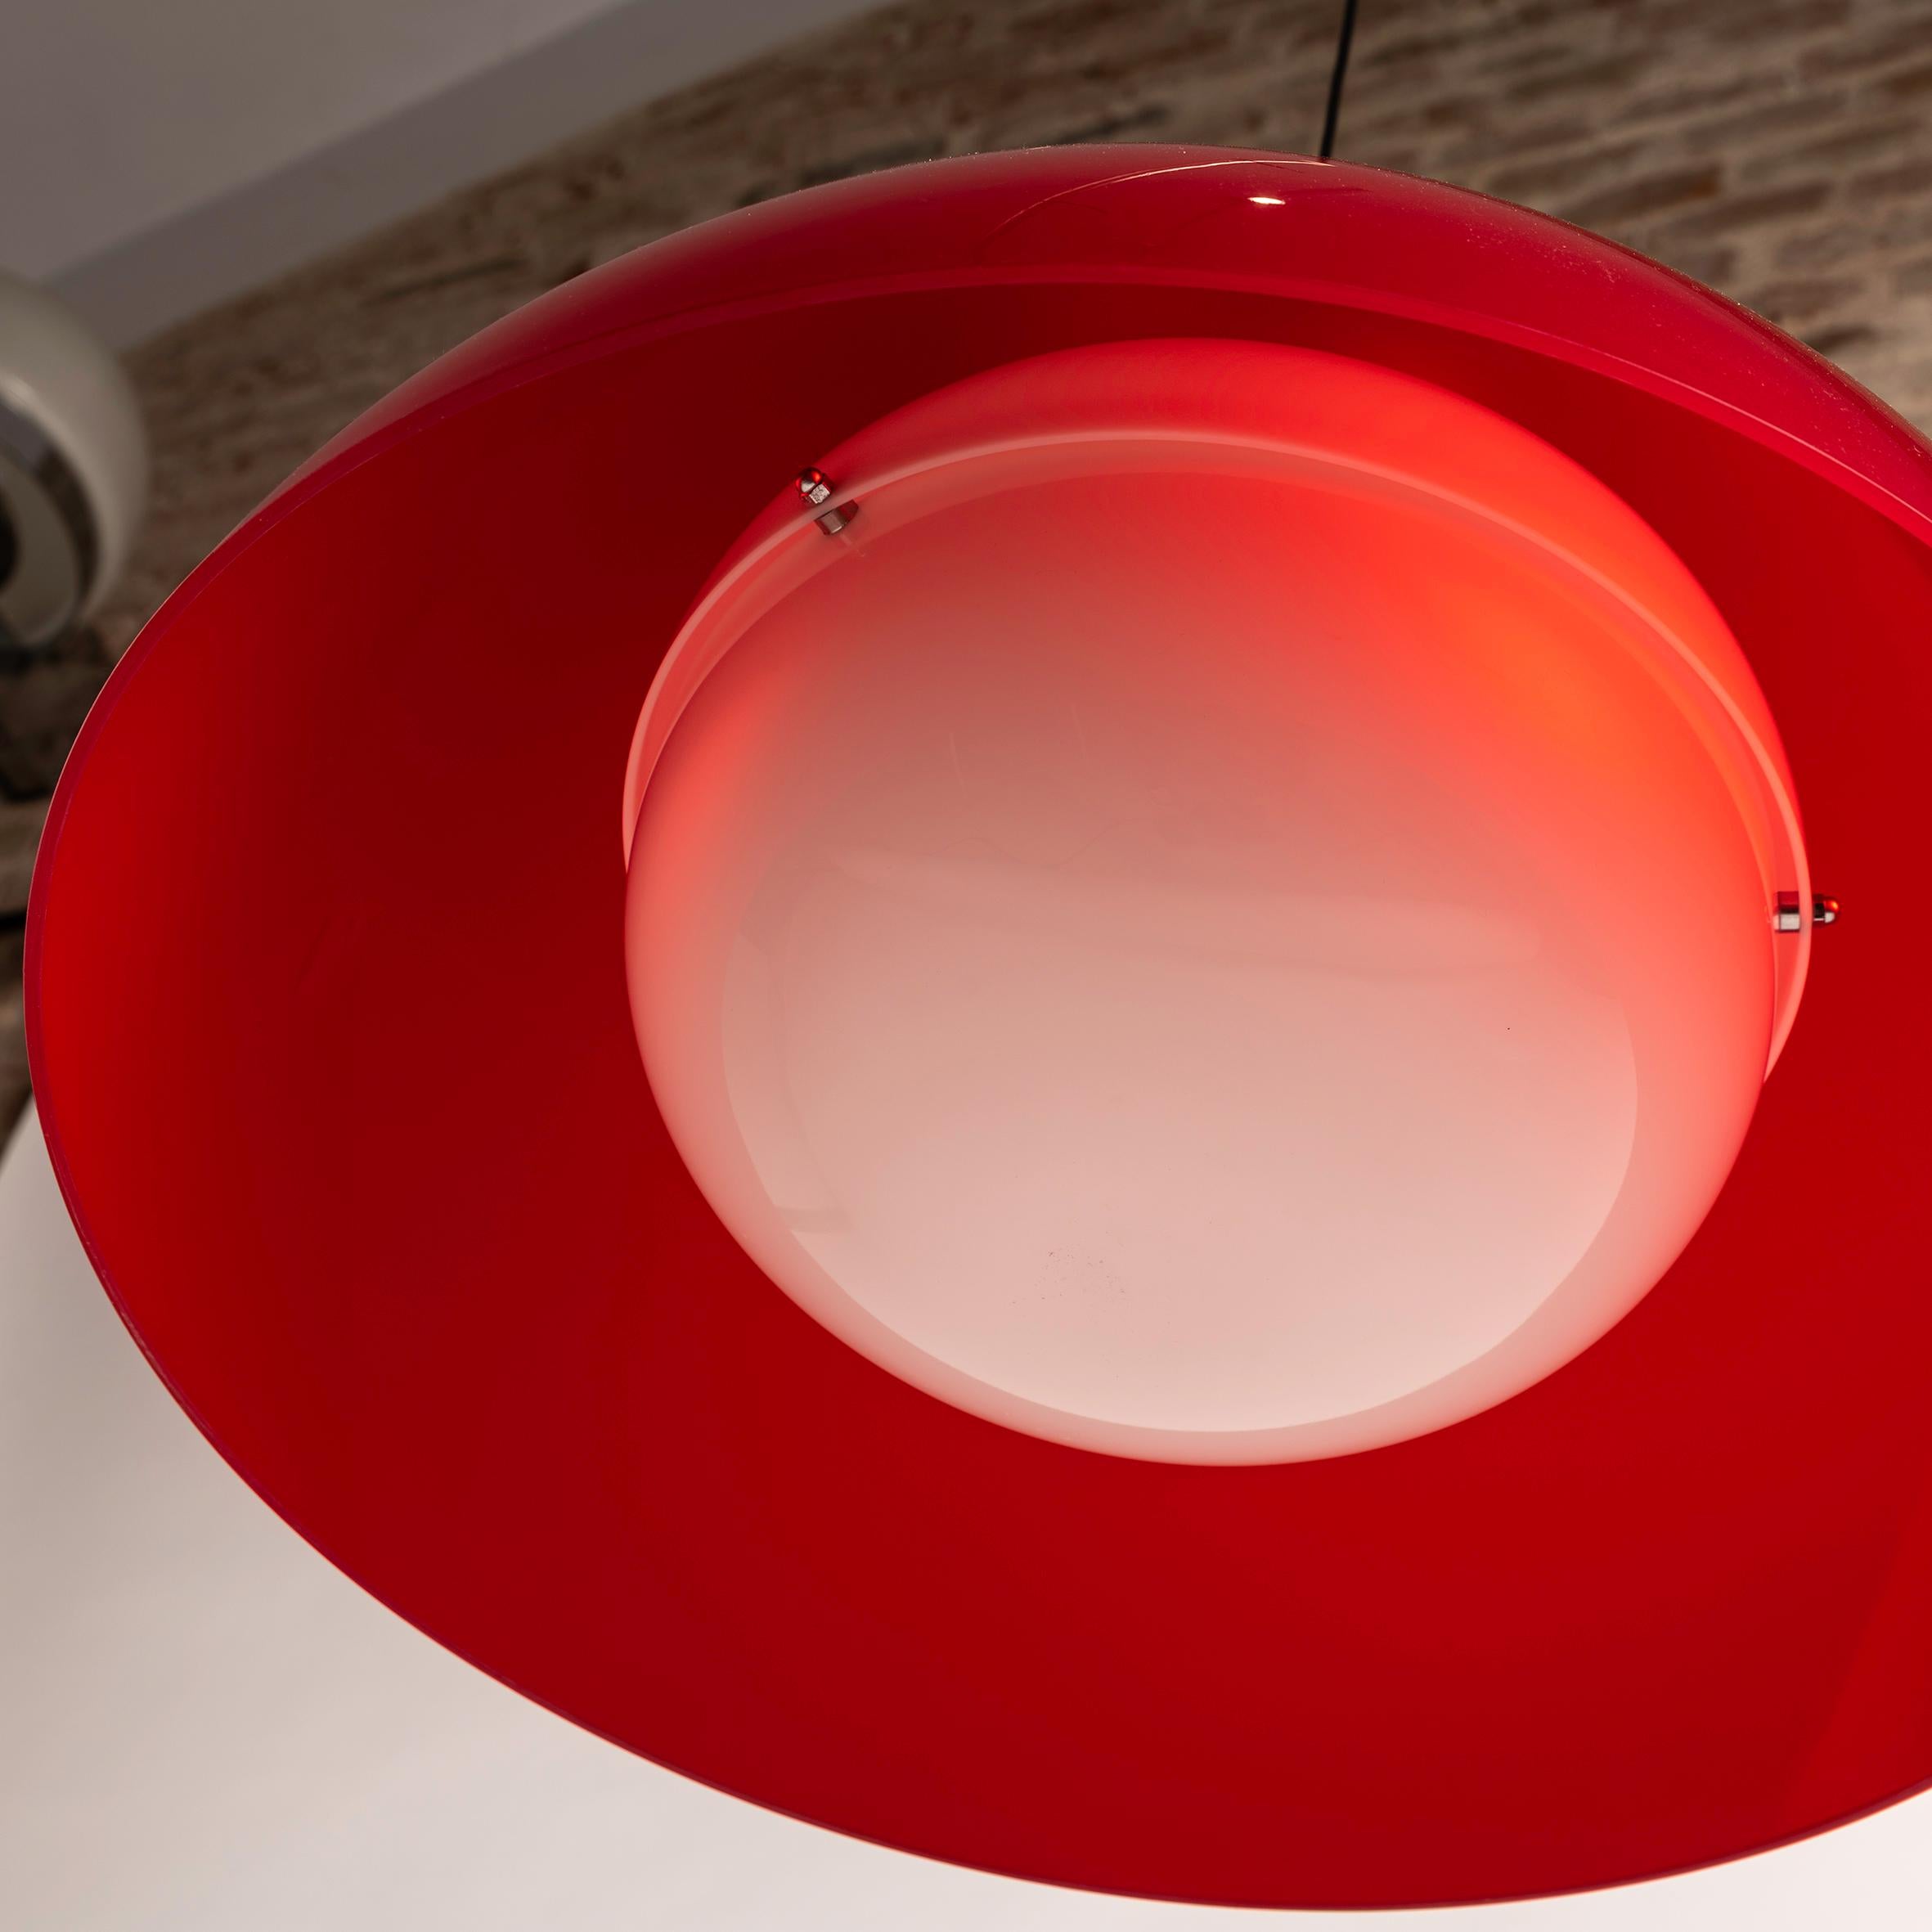 Die rote Kartell/Tramo KD6 Pendelleuchte, entworfen von den legendären Achille und Piergiacomo Castiglioni, ist der Inbegriff von zeitloser Eleganz und innovativem Design. Diese in Collaboration mit Tramo hergestellte Pendelleuchte ist ein